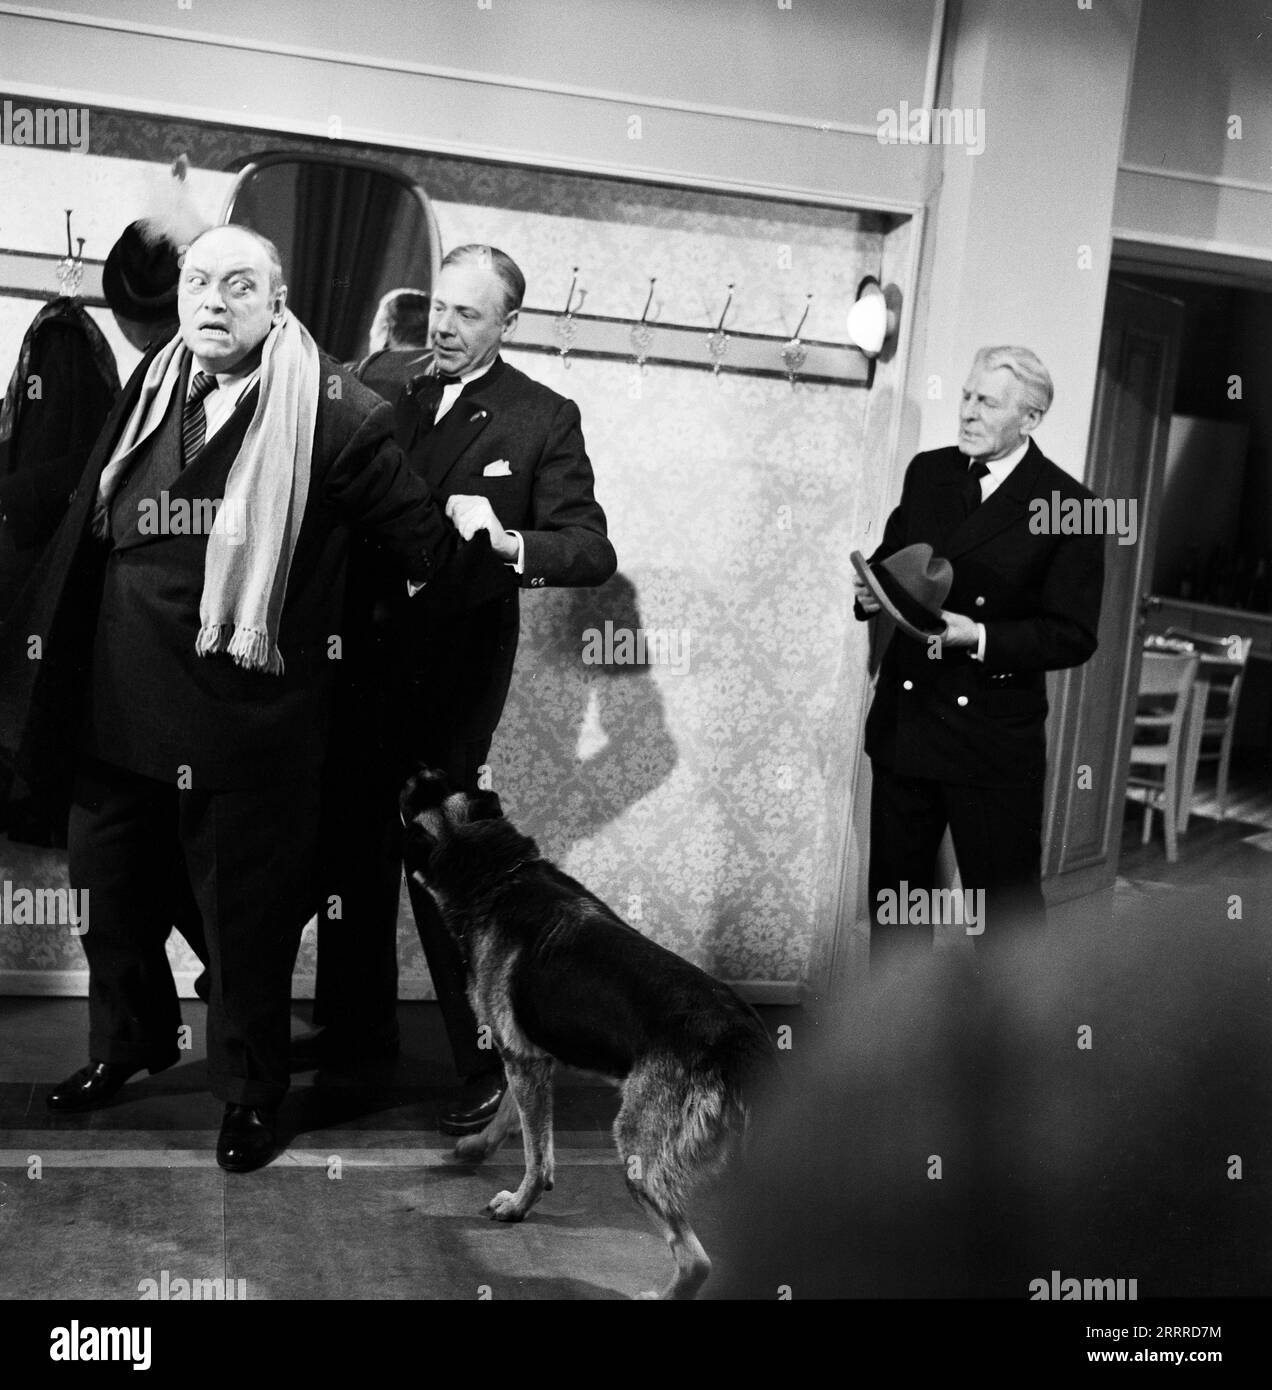 Sturm im Wasserglas, Spielfilm nach dem Bühnenstück von Bruno Frank, Deutschland 1960, Regie : Josef von Baky, Darsteller : Willy Rösner (liens) wird vom Schäferhund gekniffen beim Ablegen des Mantels. Banque D'Images